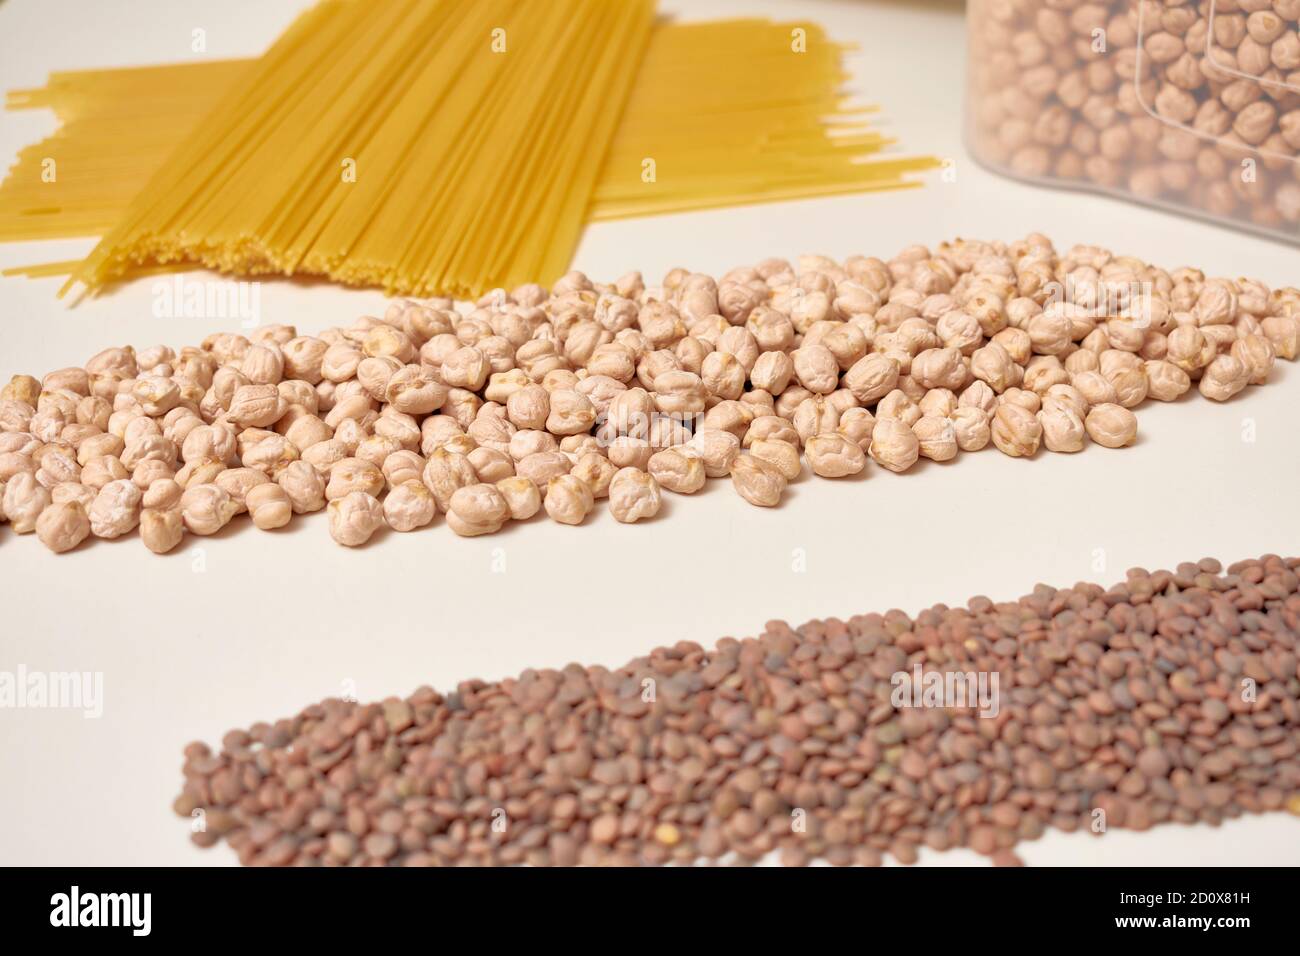 Reis, Linsen, Kichererbsen und Nudeln. Grundlegende Kohlenhydrate in einer ausgewogenen und gesunden Ernährung. Stockfoto